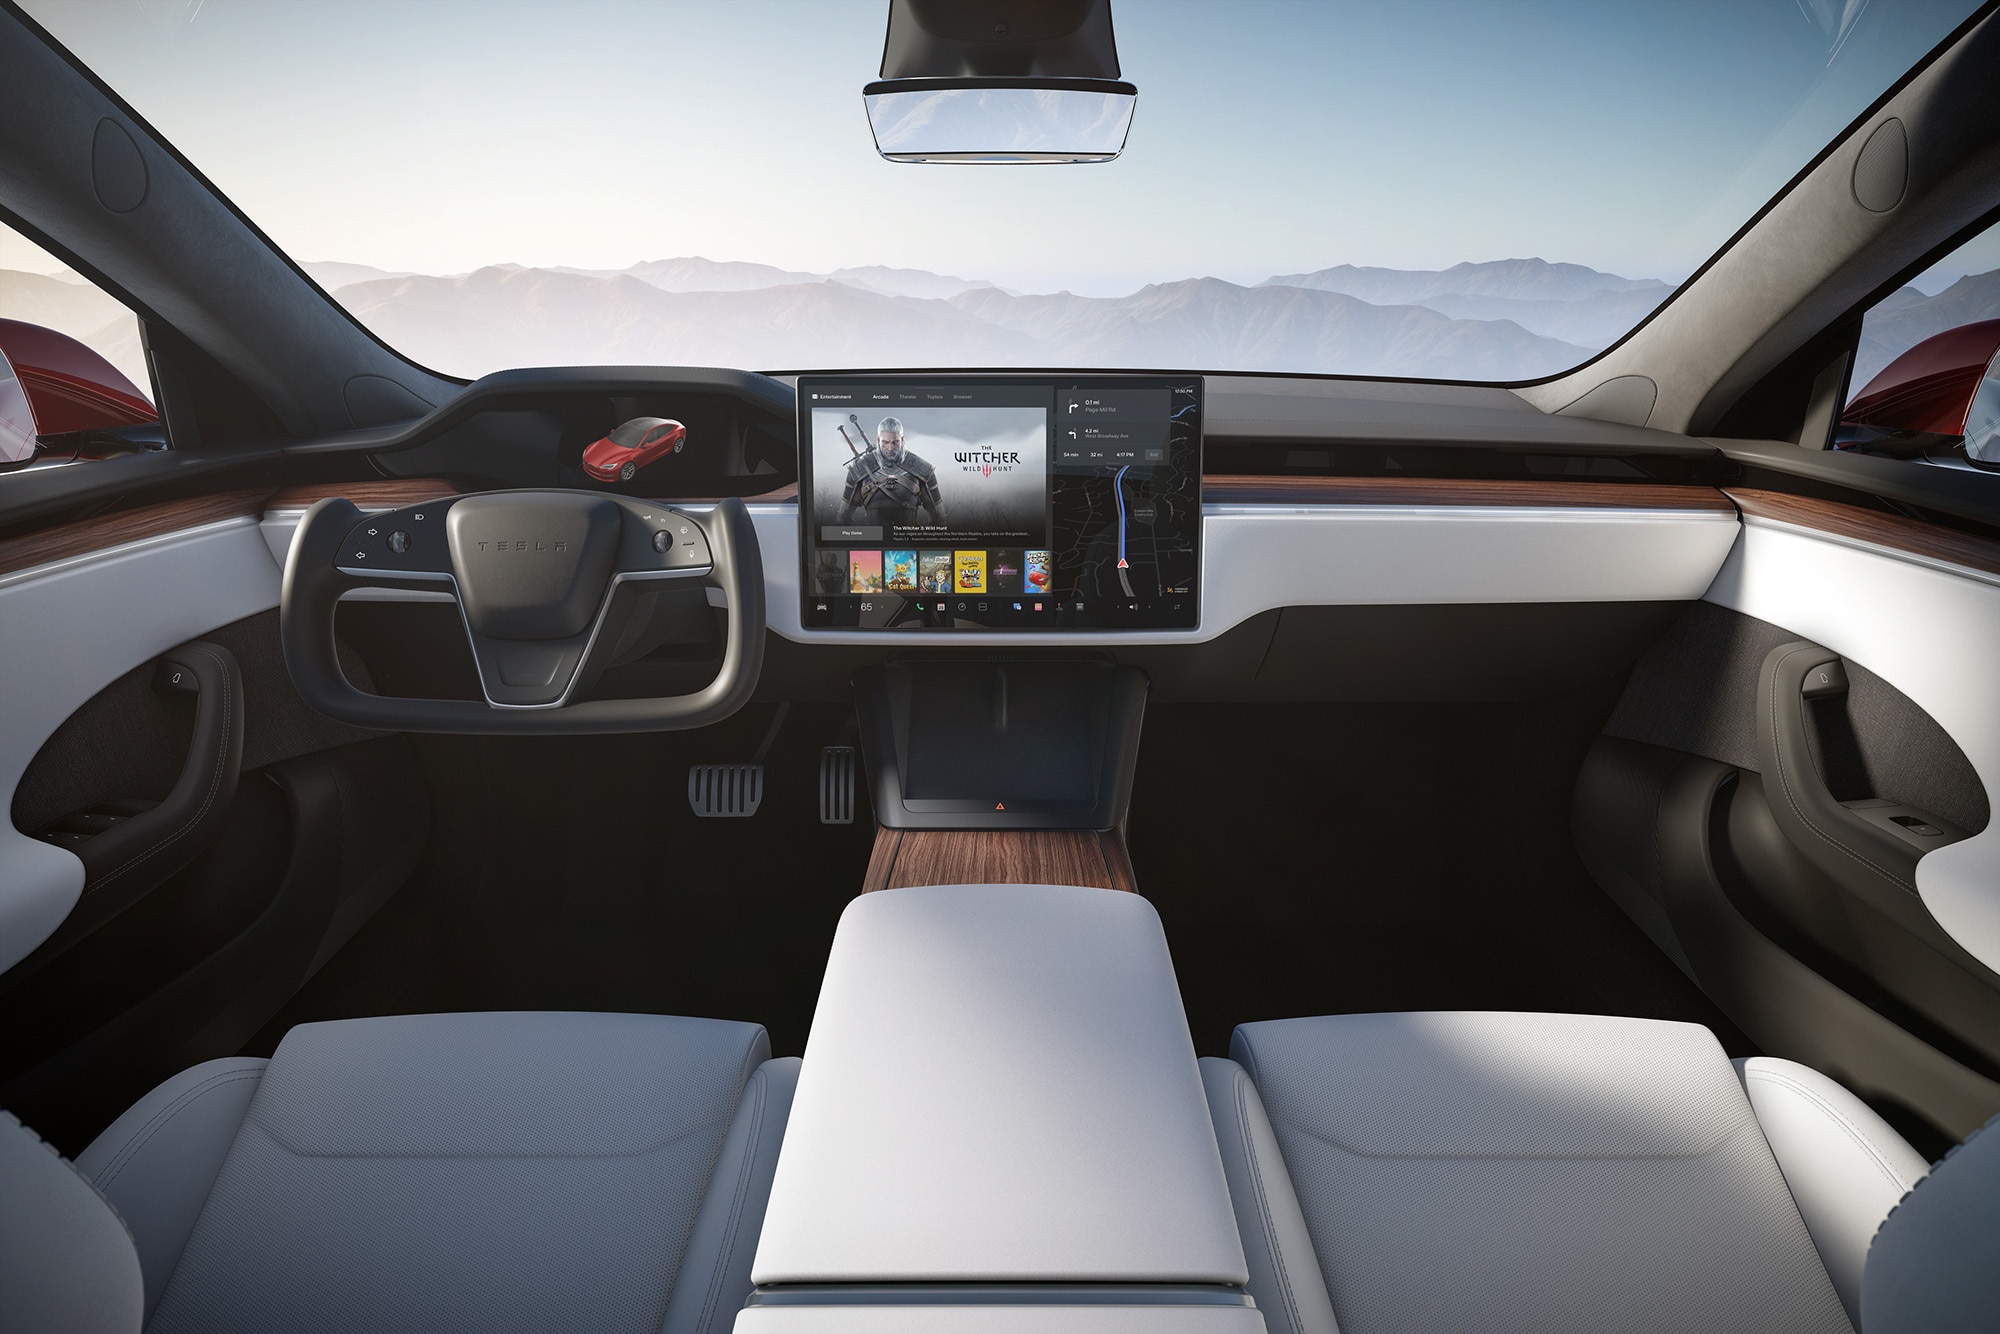 Tesla Model S interior in white